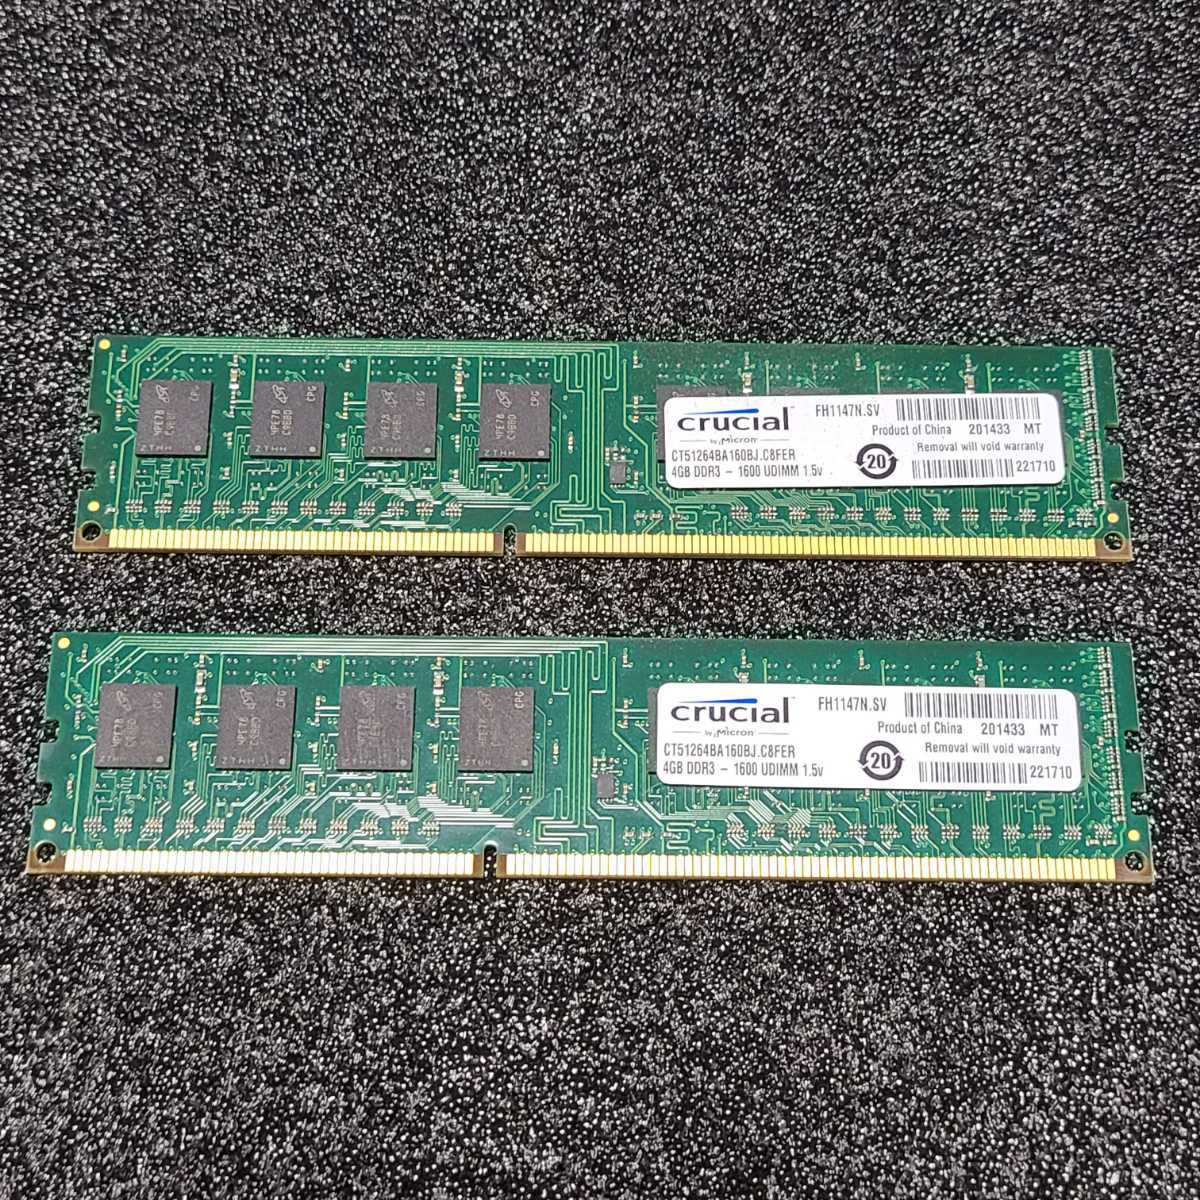 534円 今ダケ送料無料 Crucial DDR3 デスクトップ用メモリー 4GB ×2 8GB